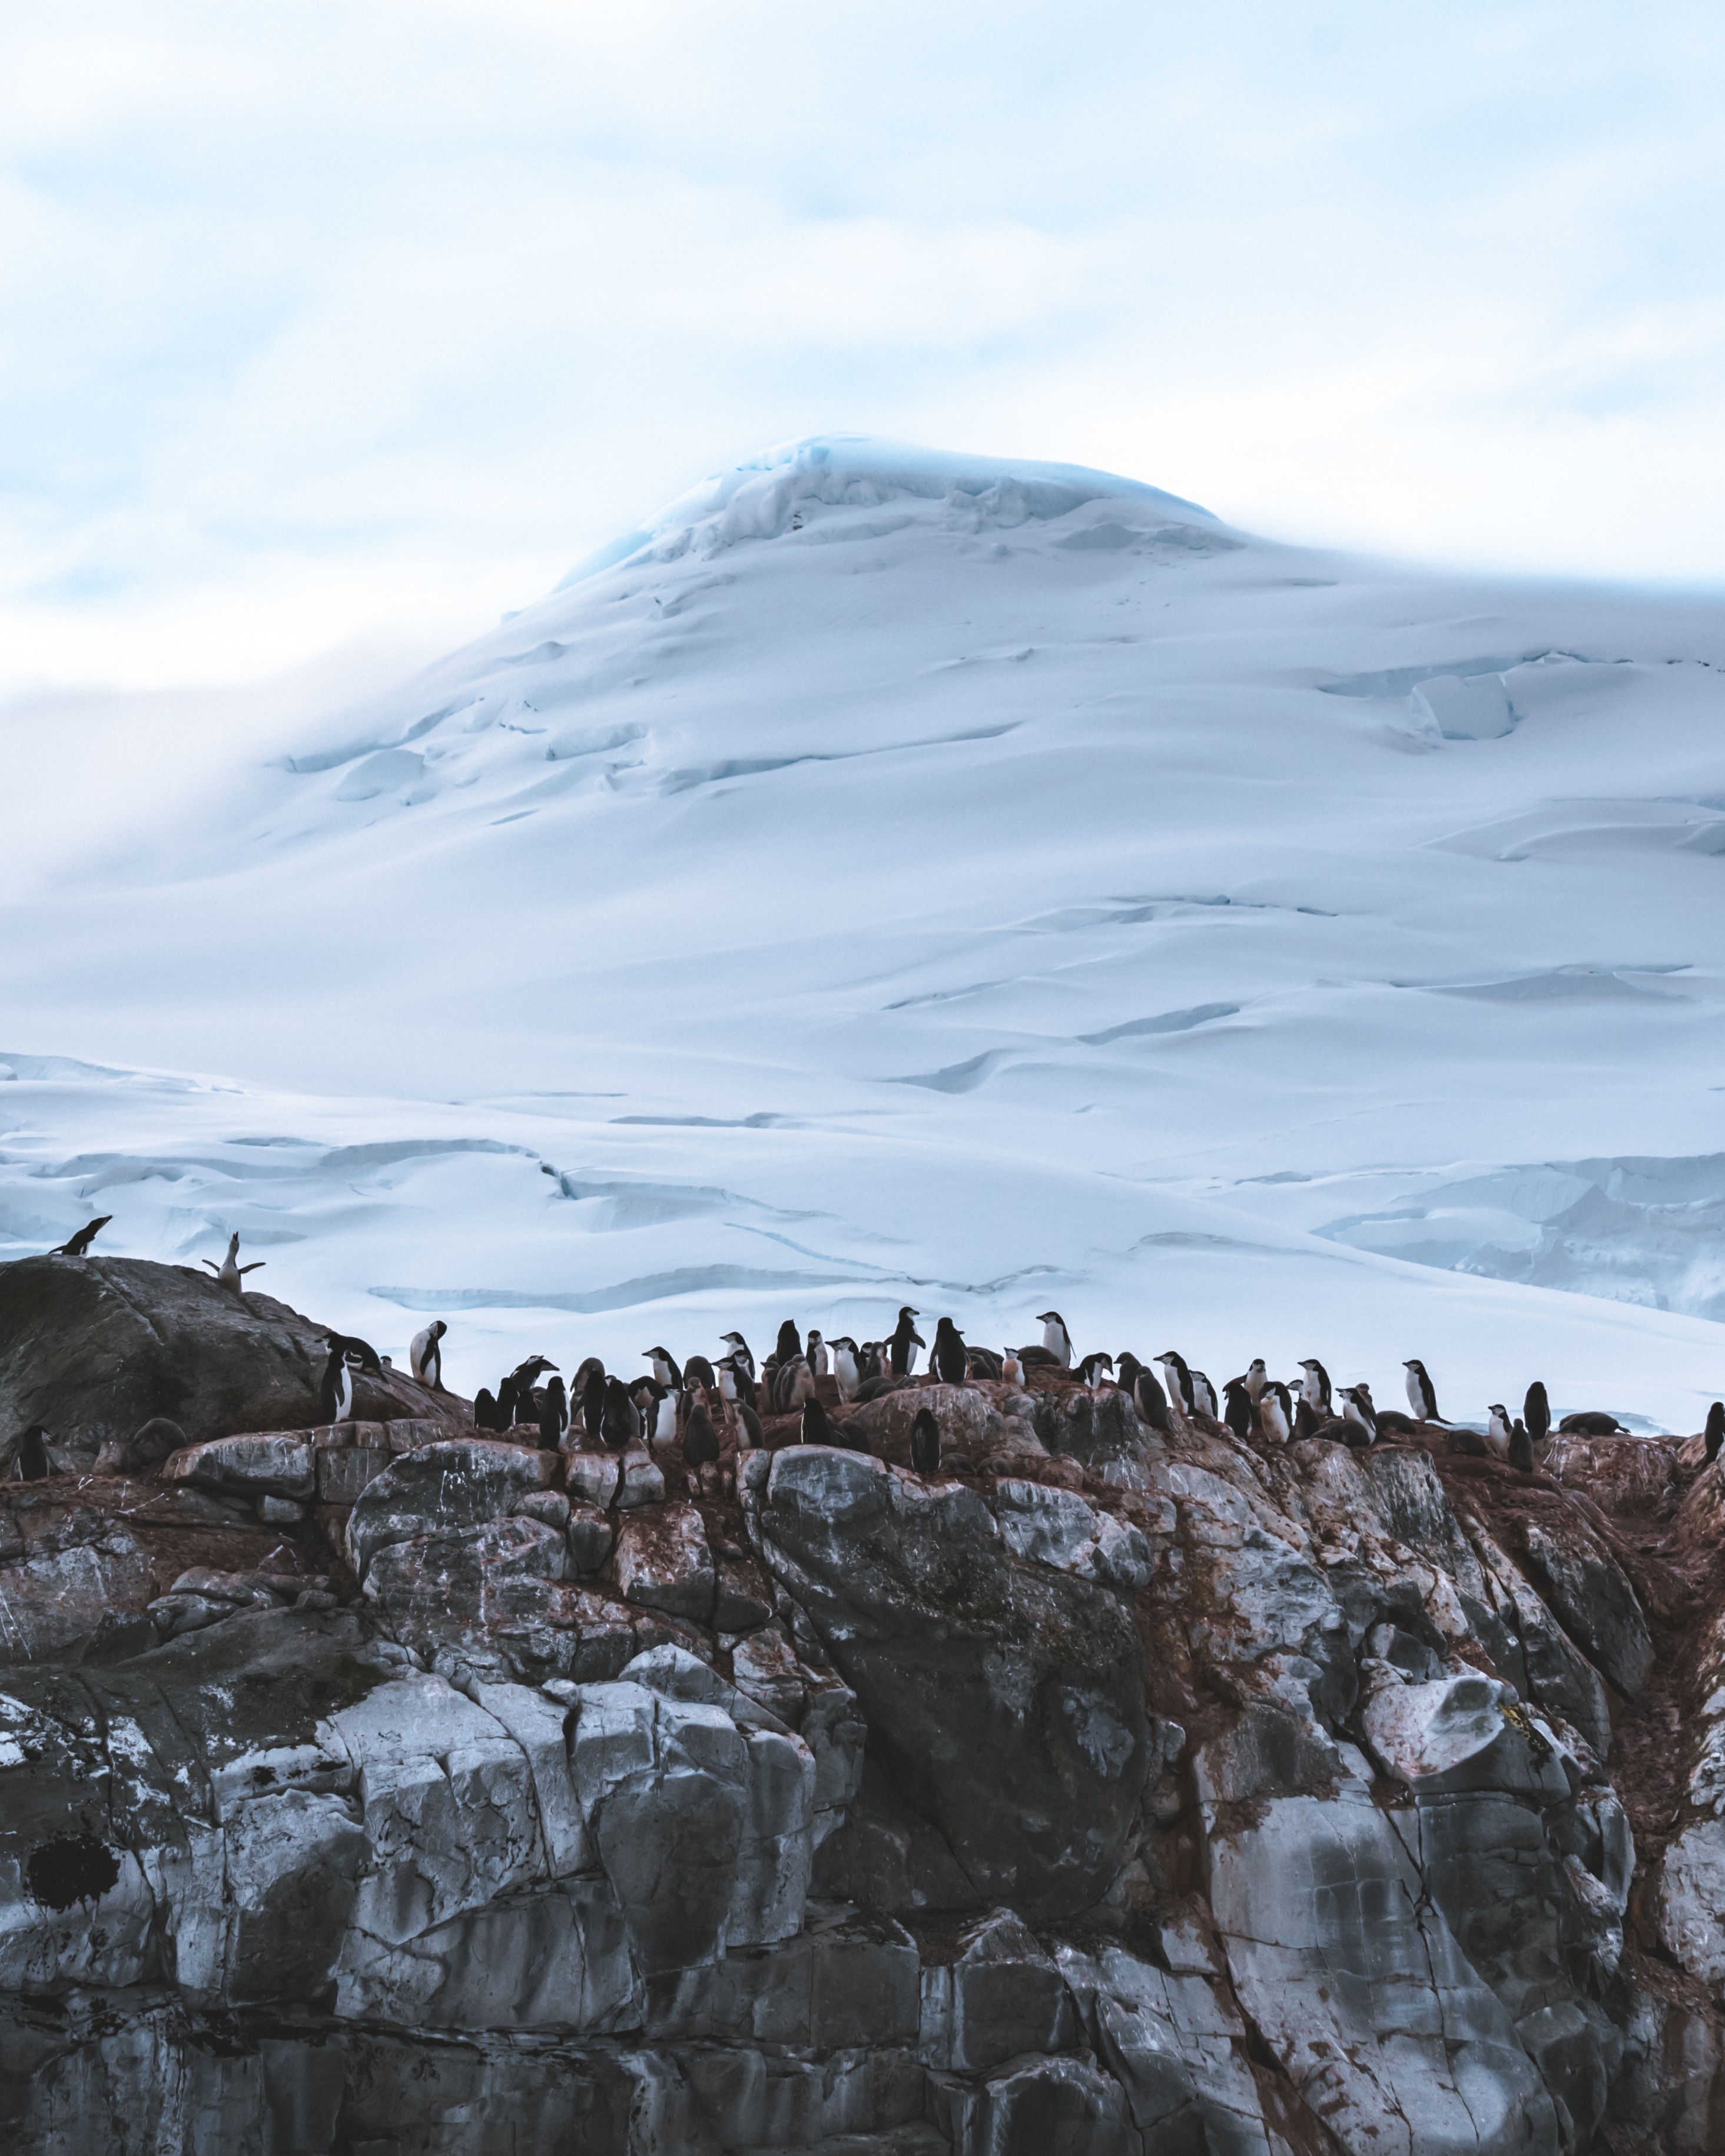 Скачать обои бесплатно Гора, Снег, Ледник, Животные, Антарктида, Пингвины картинка на рабочий стол ПК